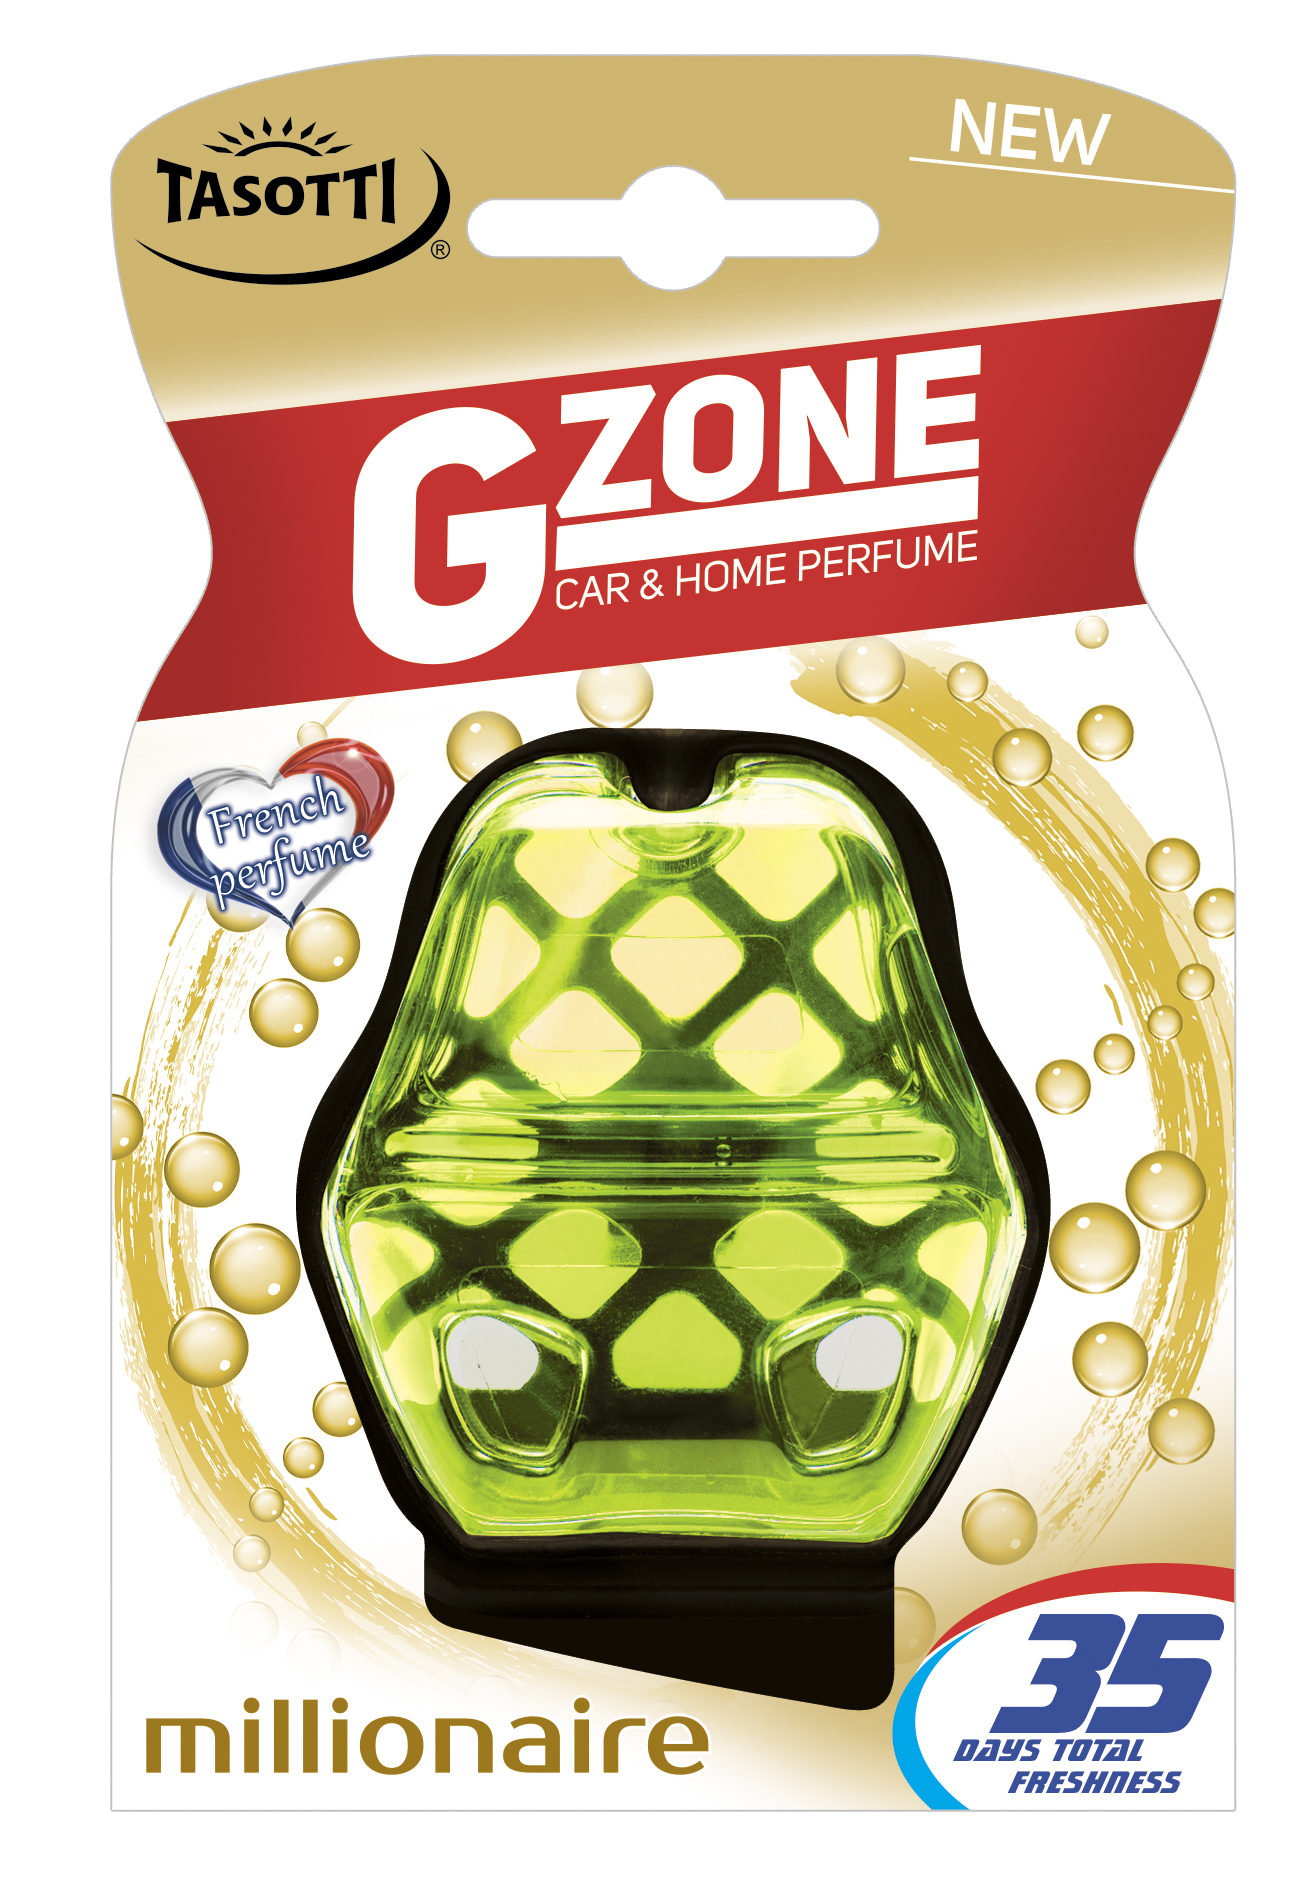 GZone- Millionaire